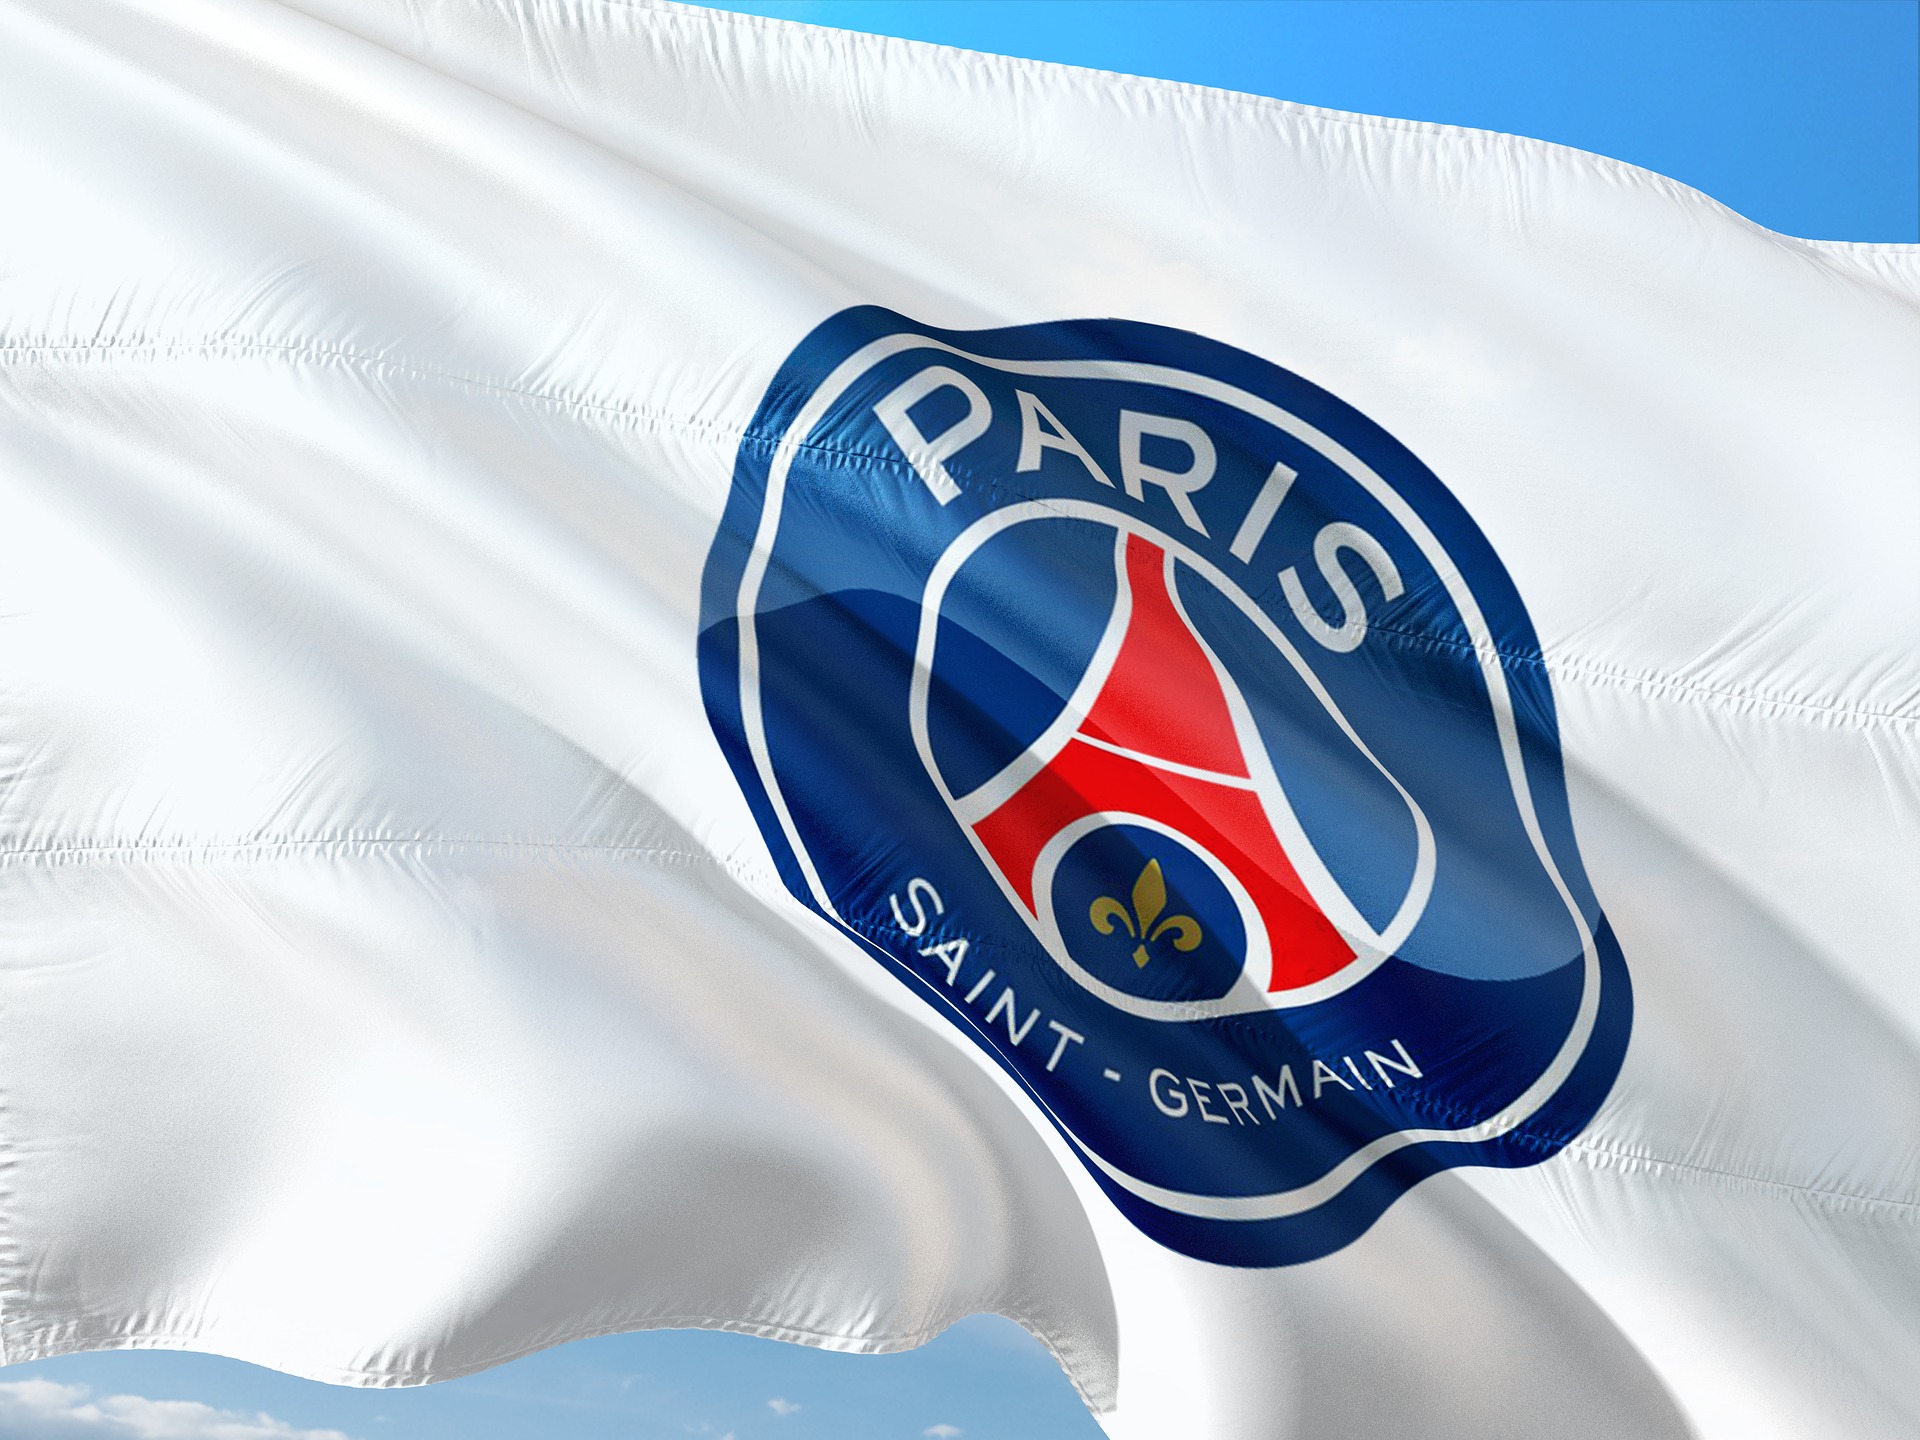 Paris St. Germain Football